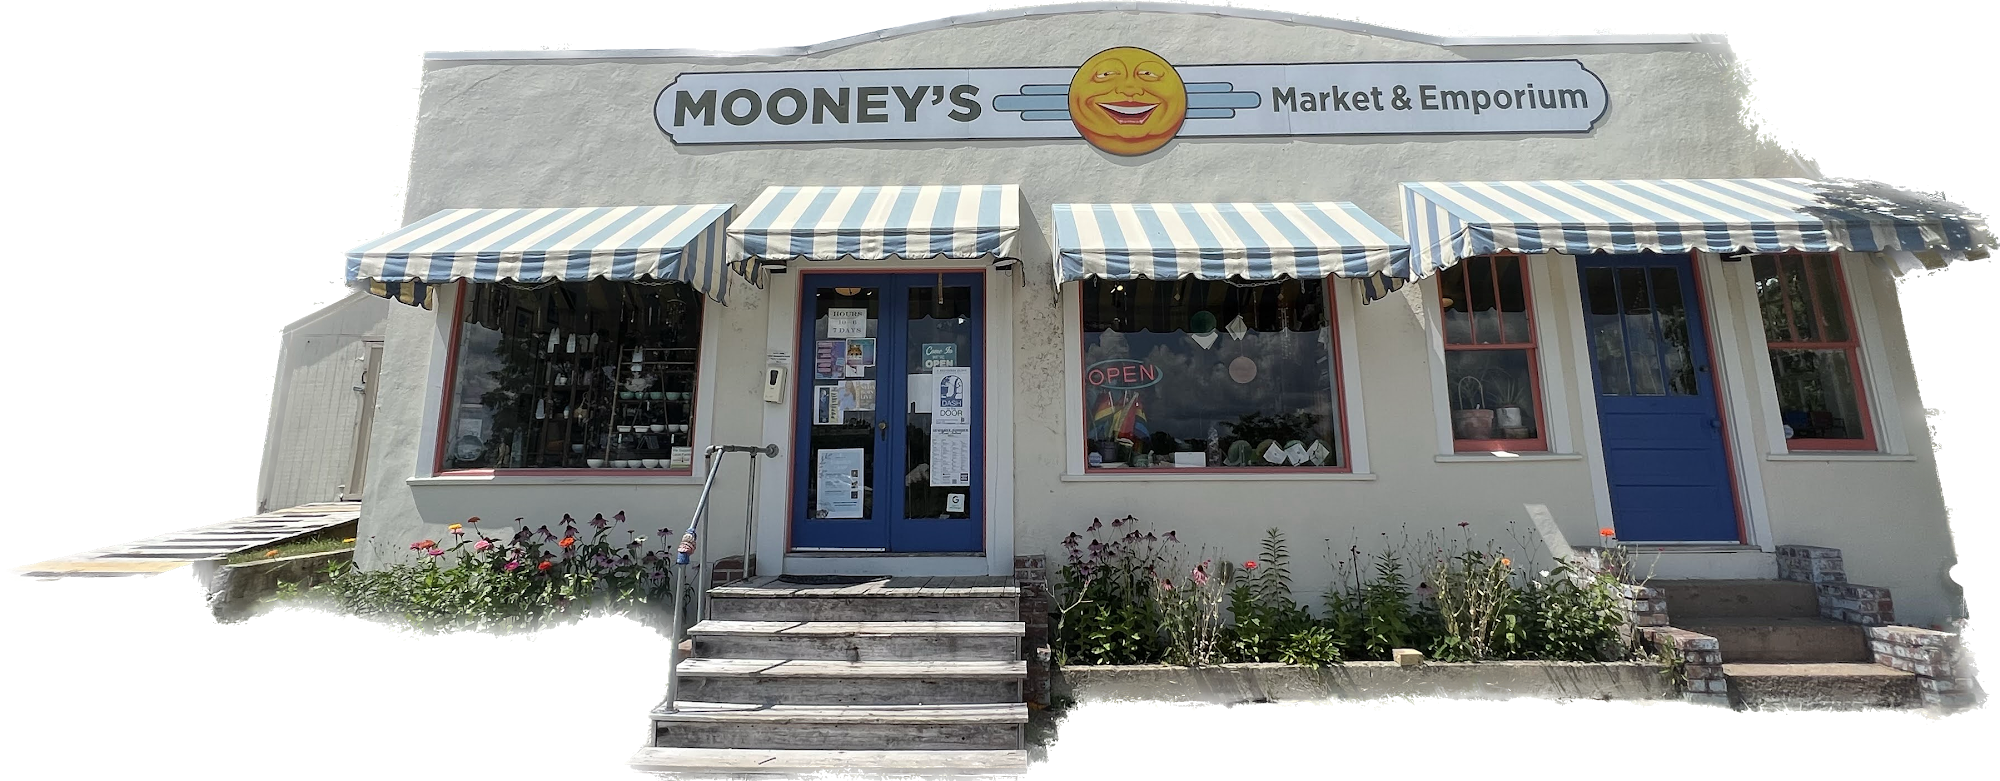 Mooney's Market & Emporium